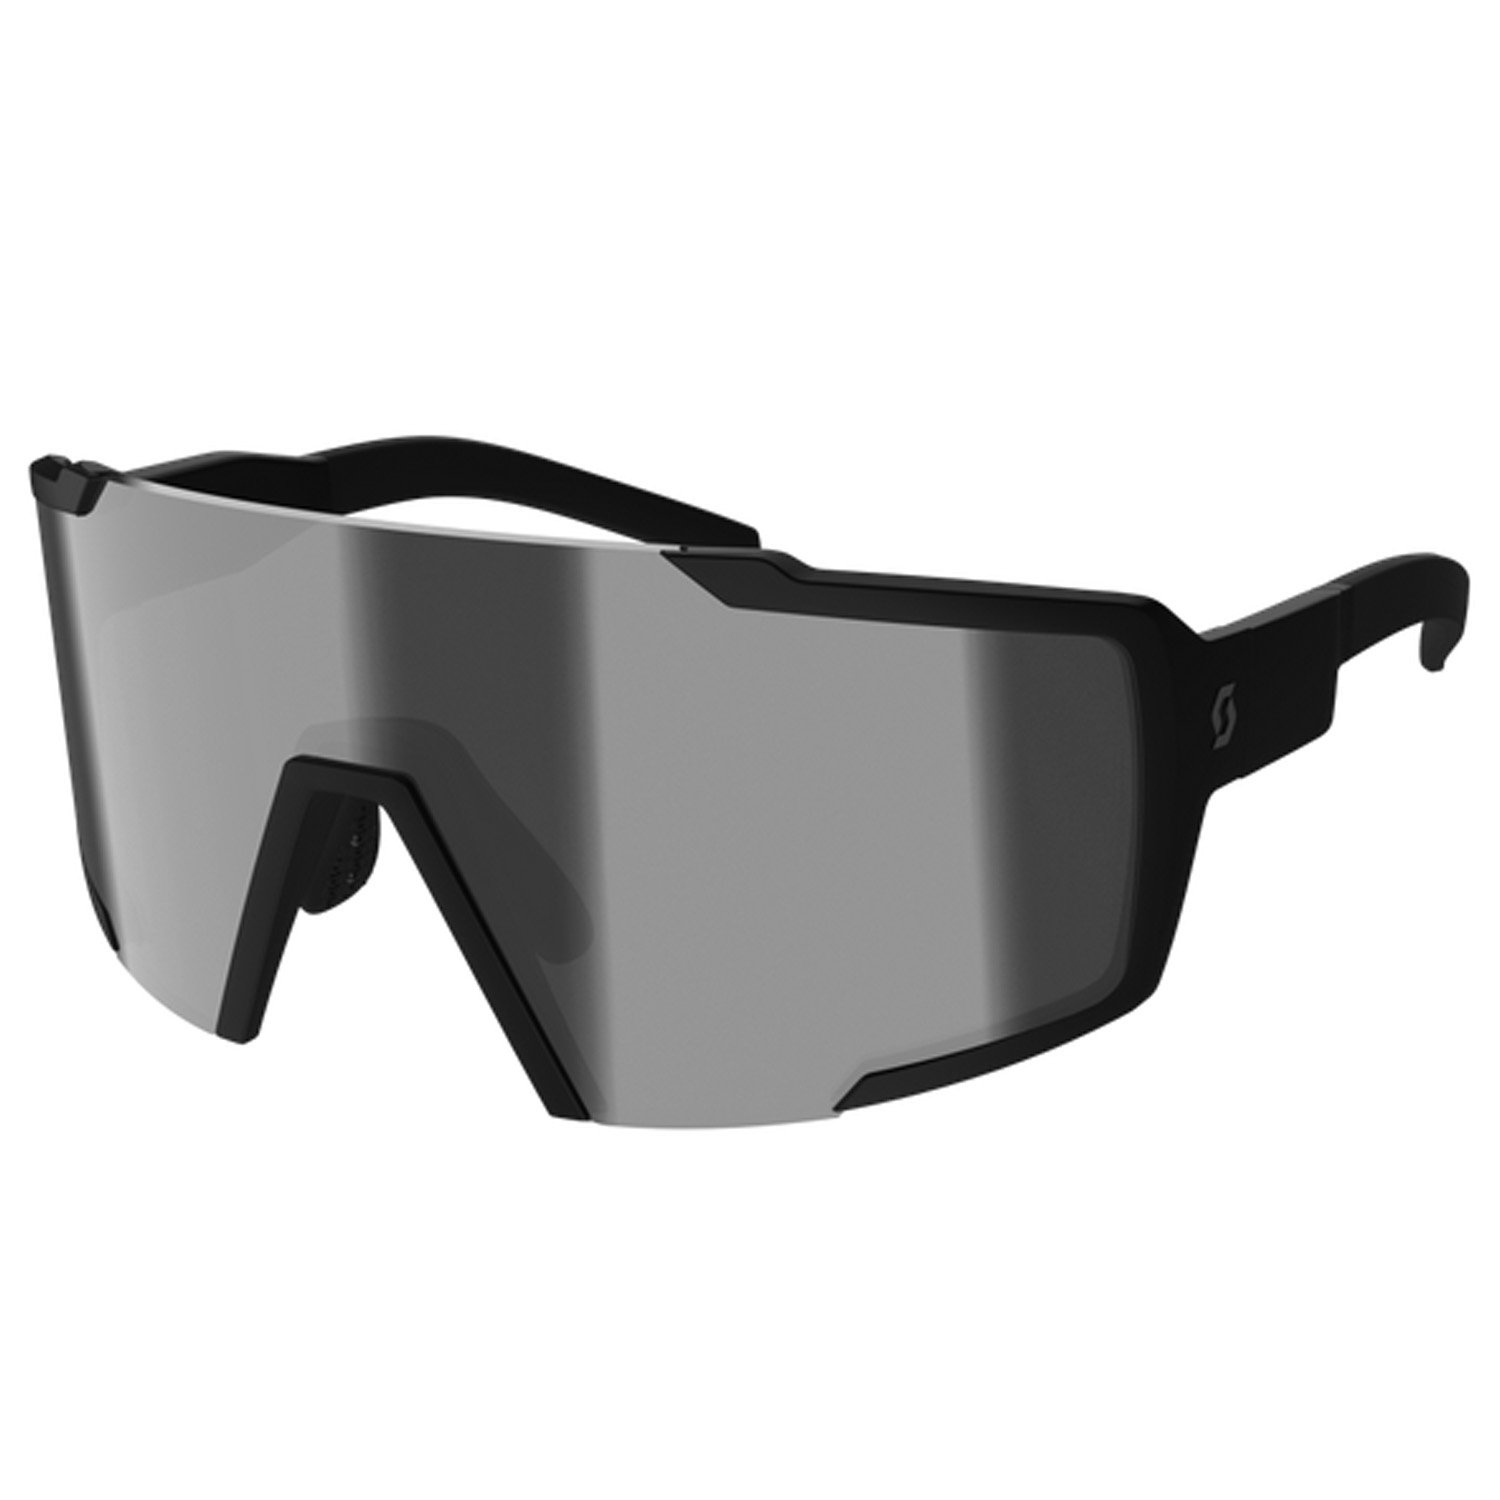 Очки велосипедные SCOTT Shield Compact black matt grey, ES289235-0135119 солнцезащитные очки bliz active fusion matt black 52105 10